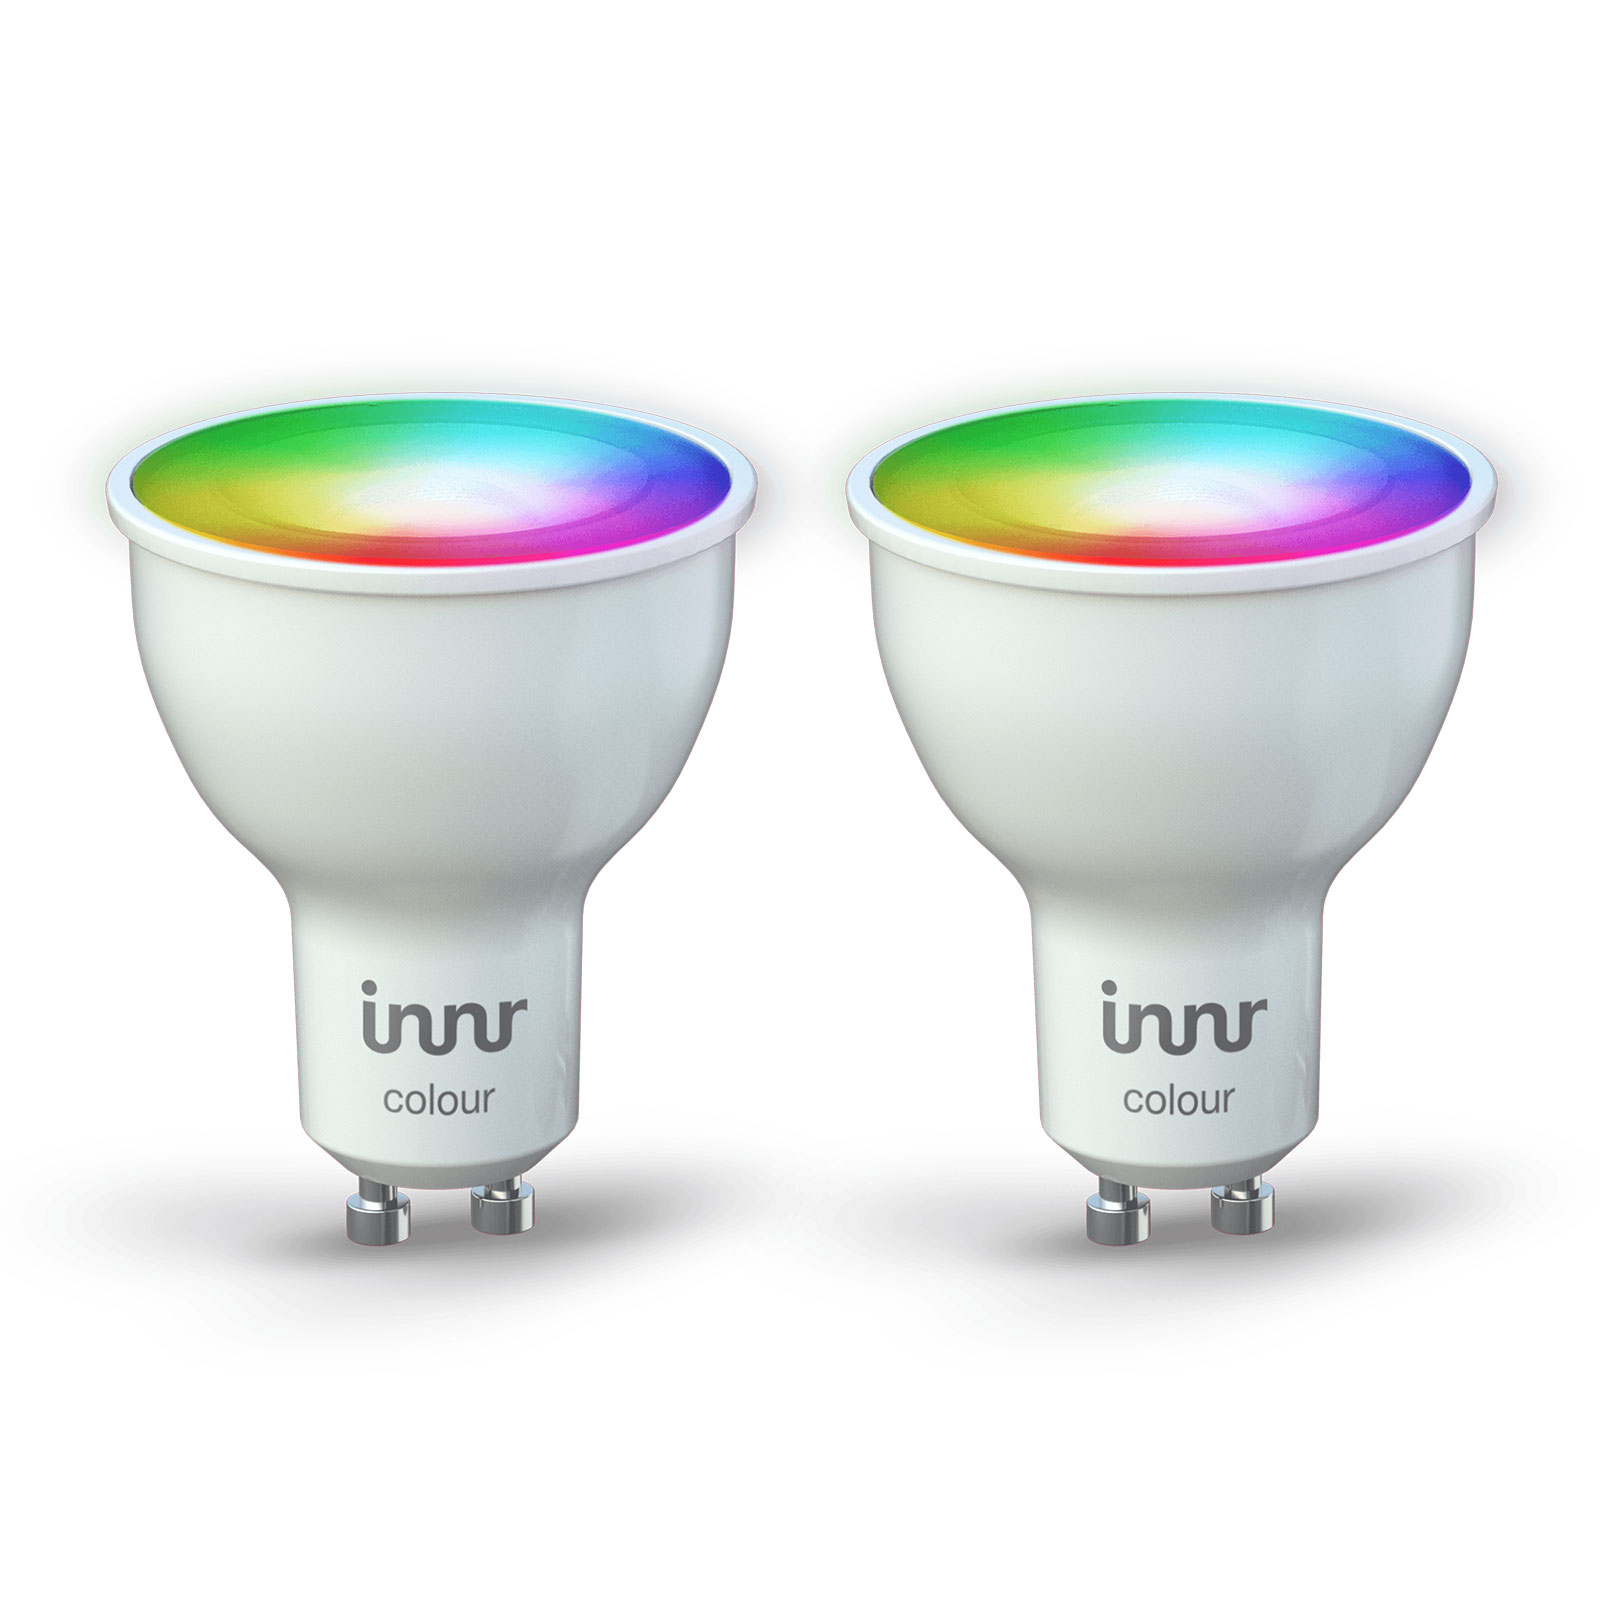 Innr LED-Spot GU10 6W Smart RGBW 350lm dimming 2x